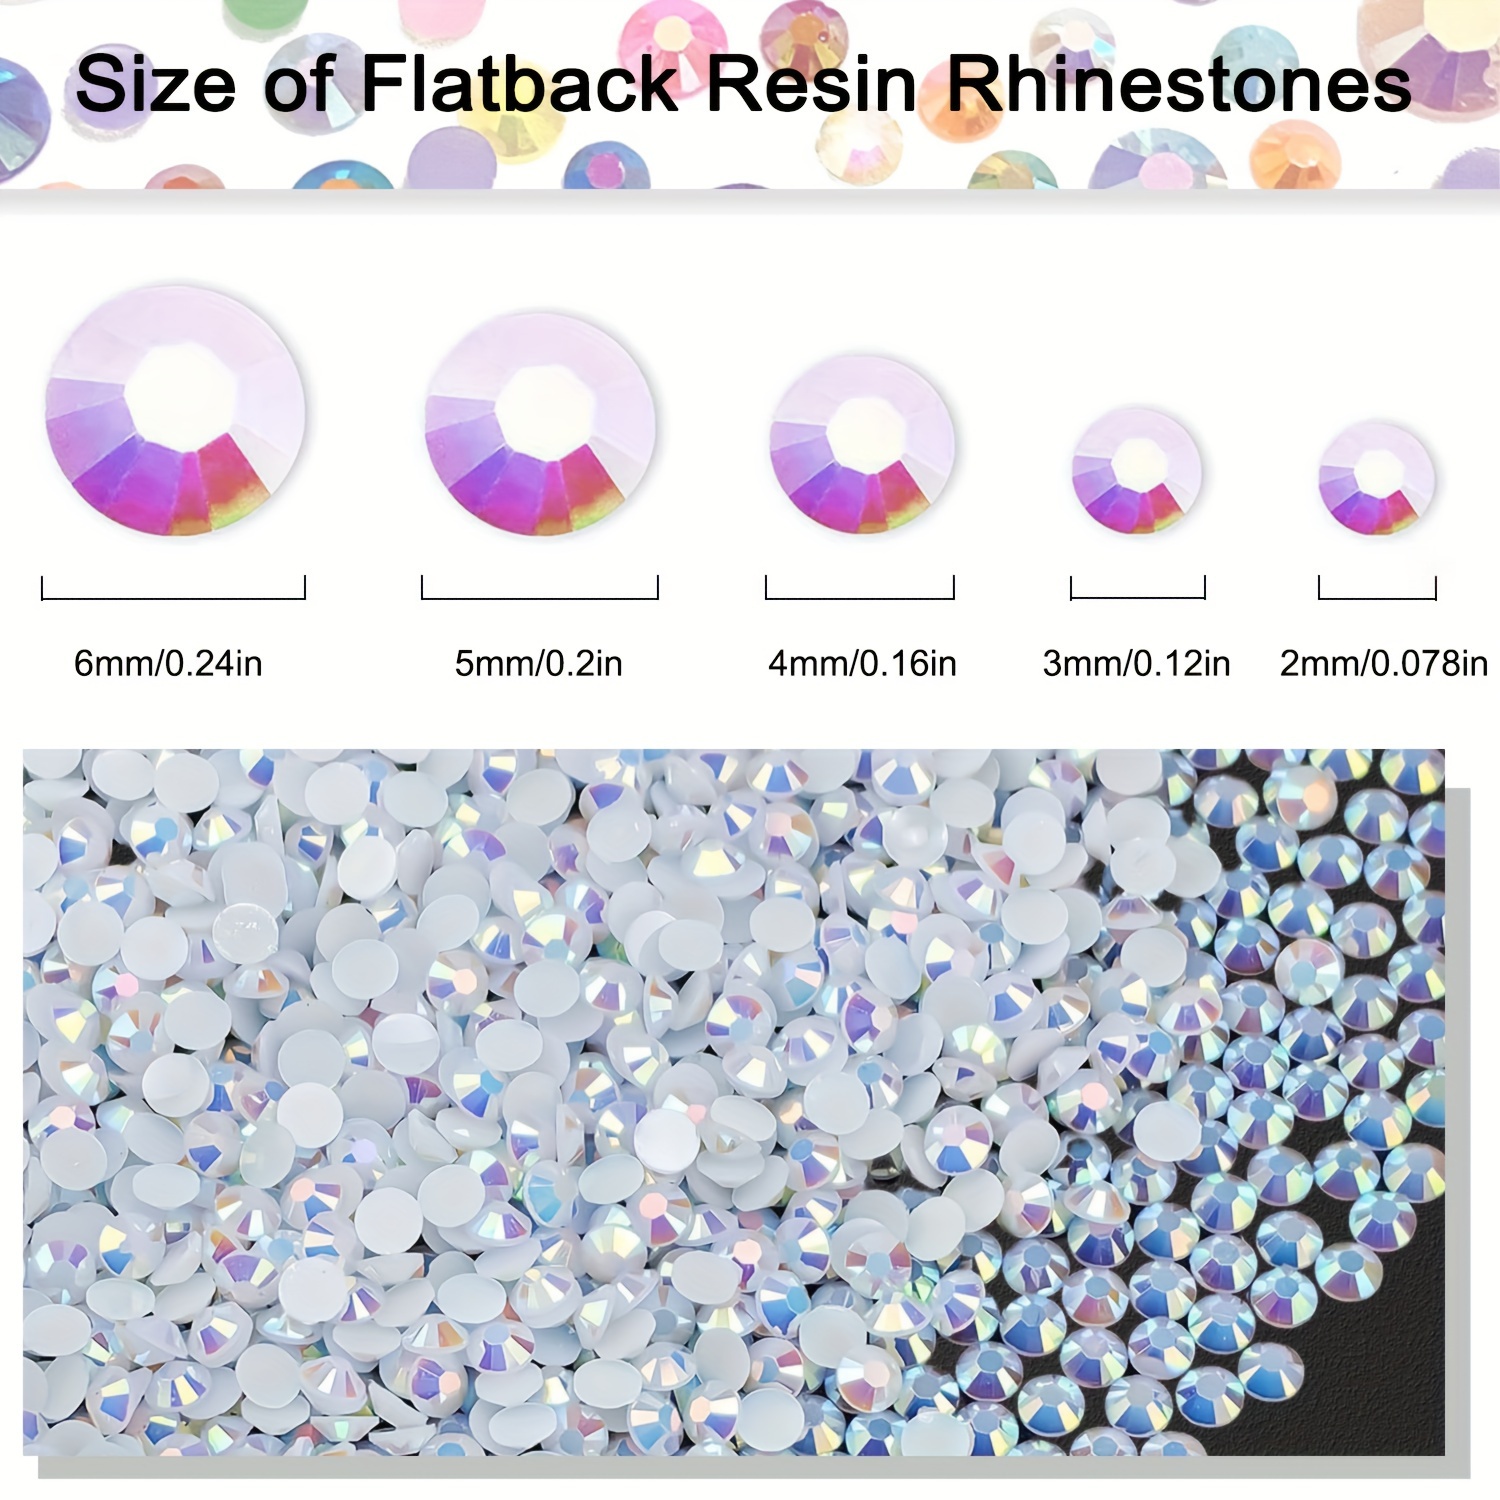 Swarovski Crystals vs Rhinestones